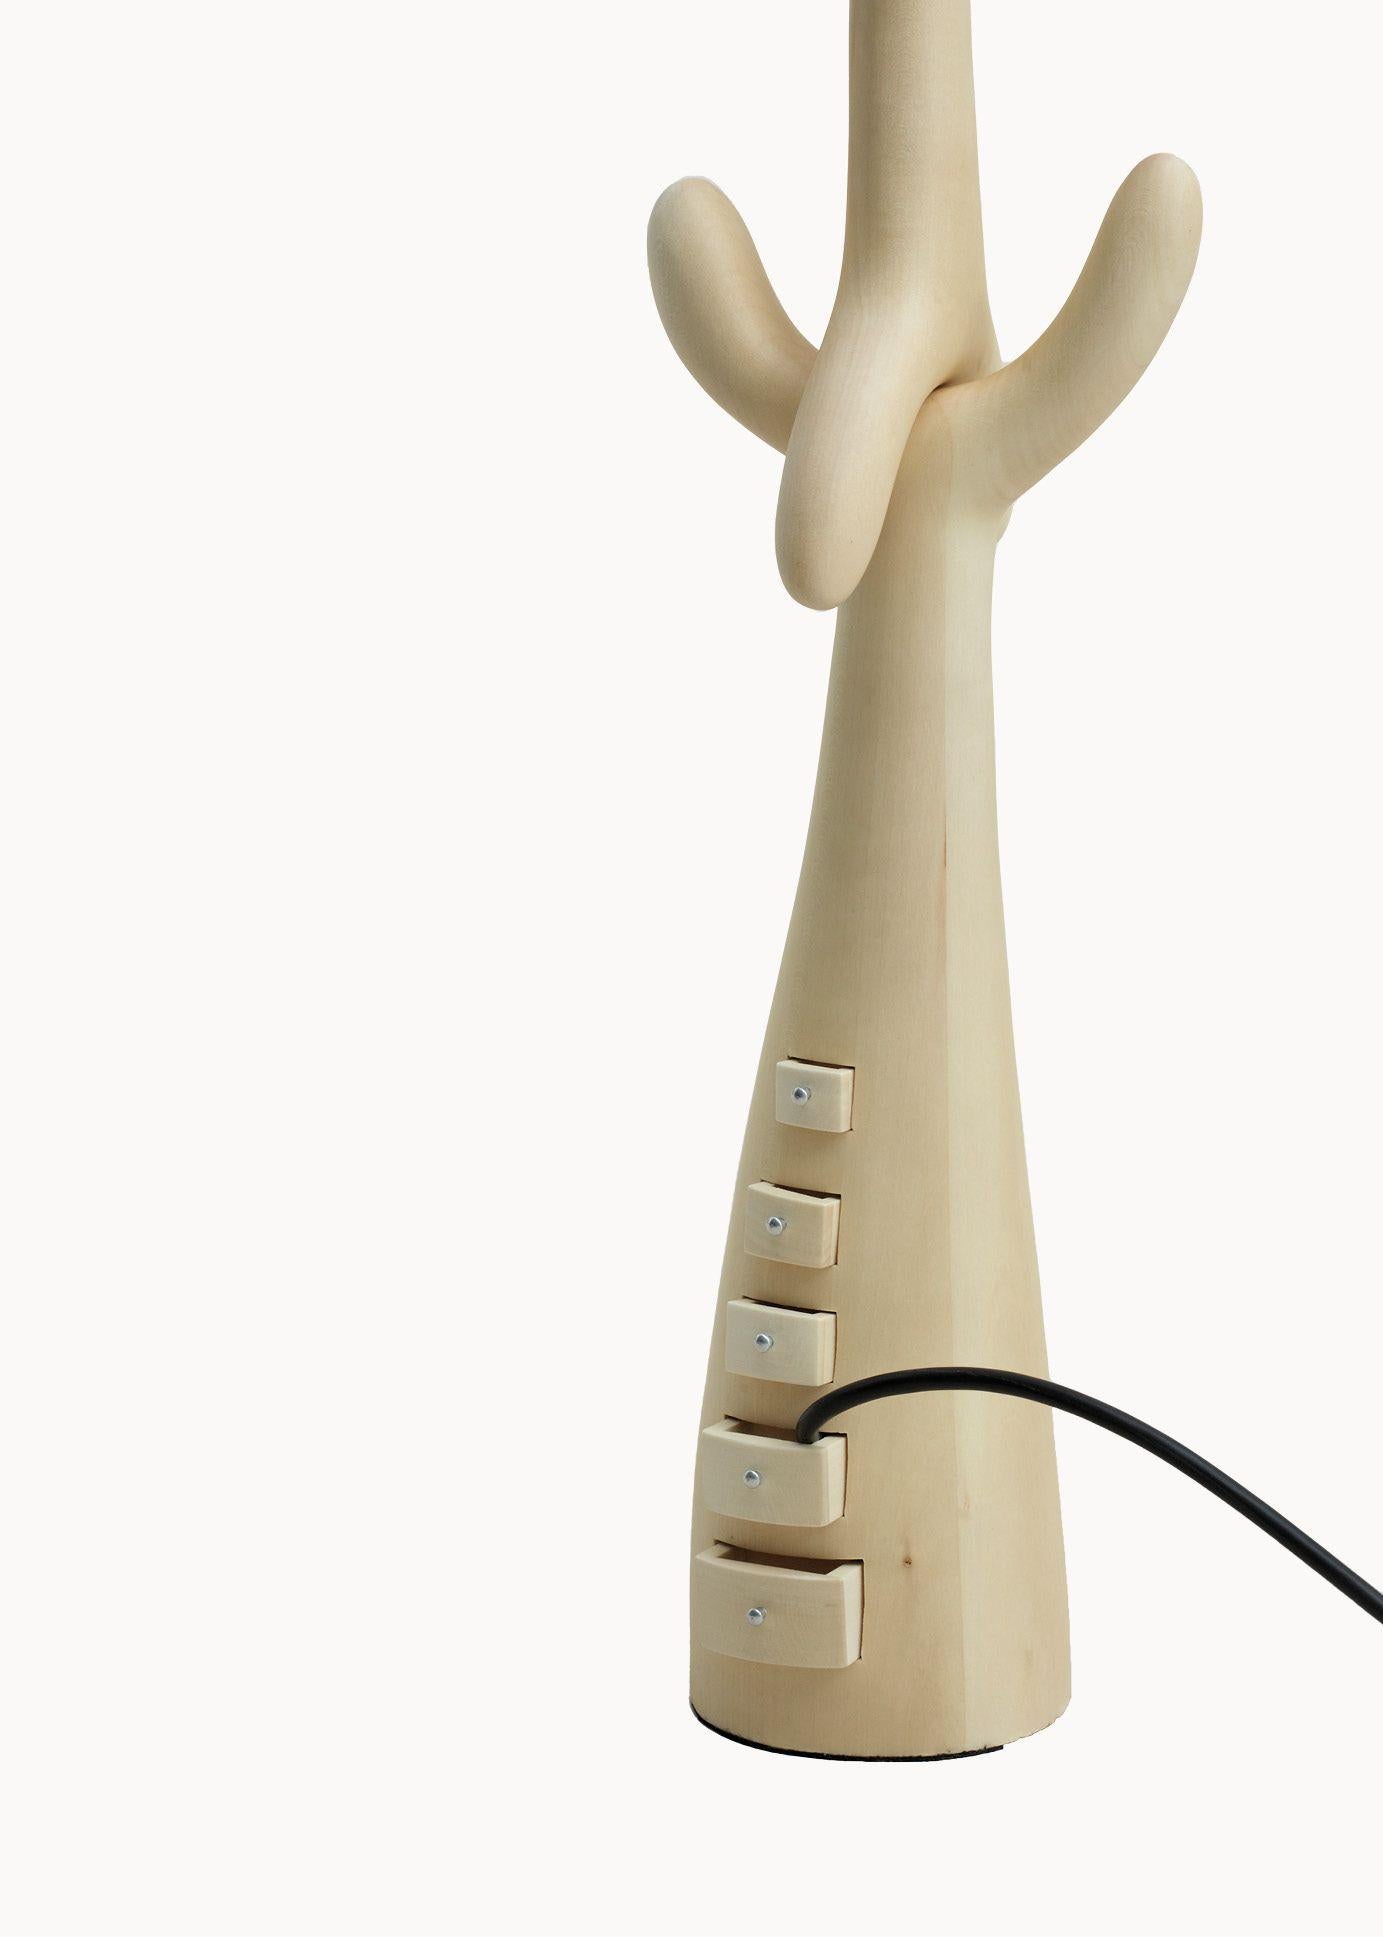 Lampe à tiroirs conçue par Dali et fabriquée par BD.

Structure sculptée en tilleul verni clair.
Abat-jour en lin beige.

Mesures : 30 x 30 x 87 H cm

Sculpture-lampes tiroirs

Une lampe sur pied inspirée des dessins de Dalí pour Jean Michel Frank.